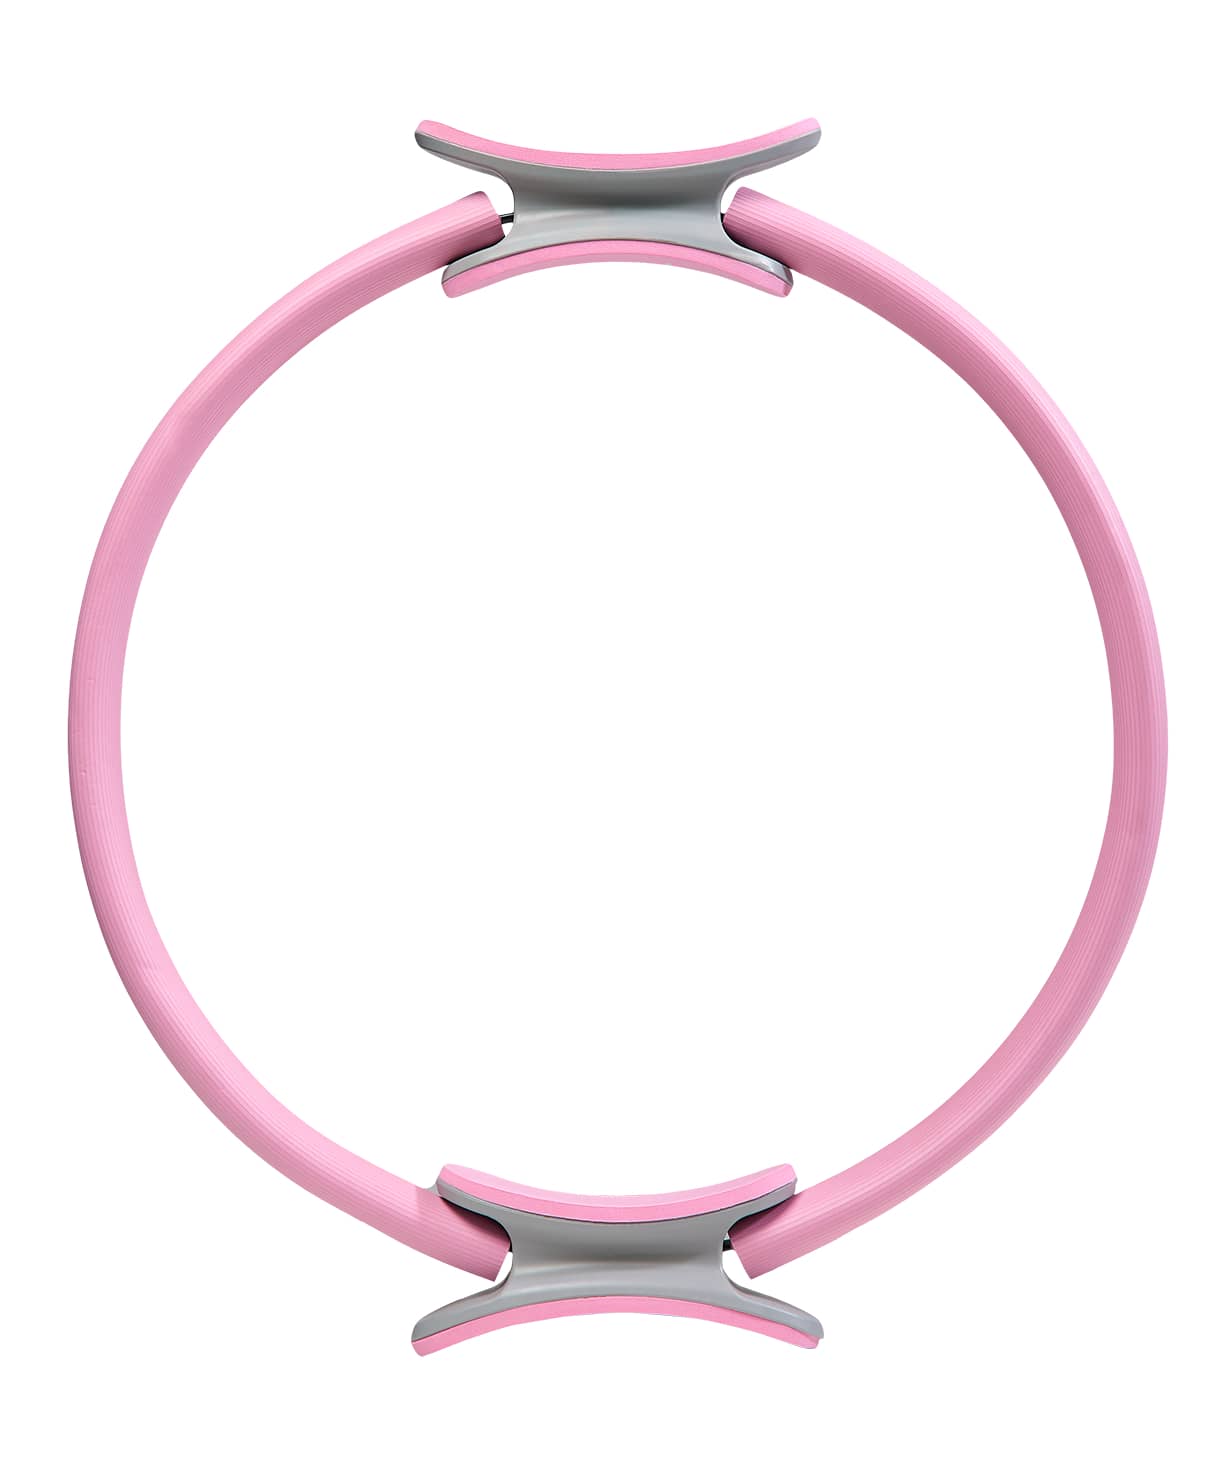 Кольцо для пилатеса FA-402 39 см, розовый пастель 1230_1479